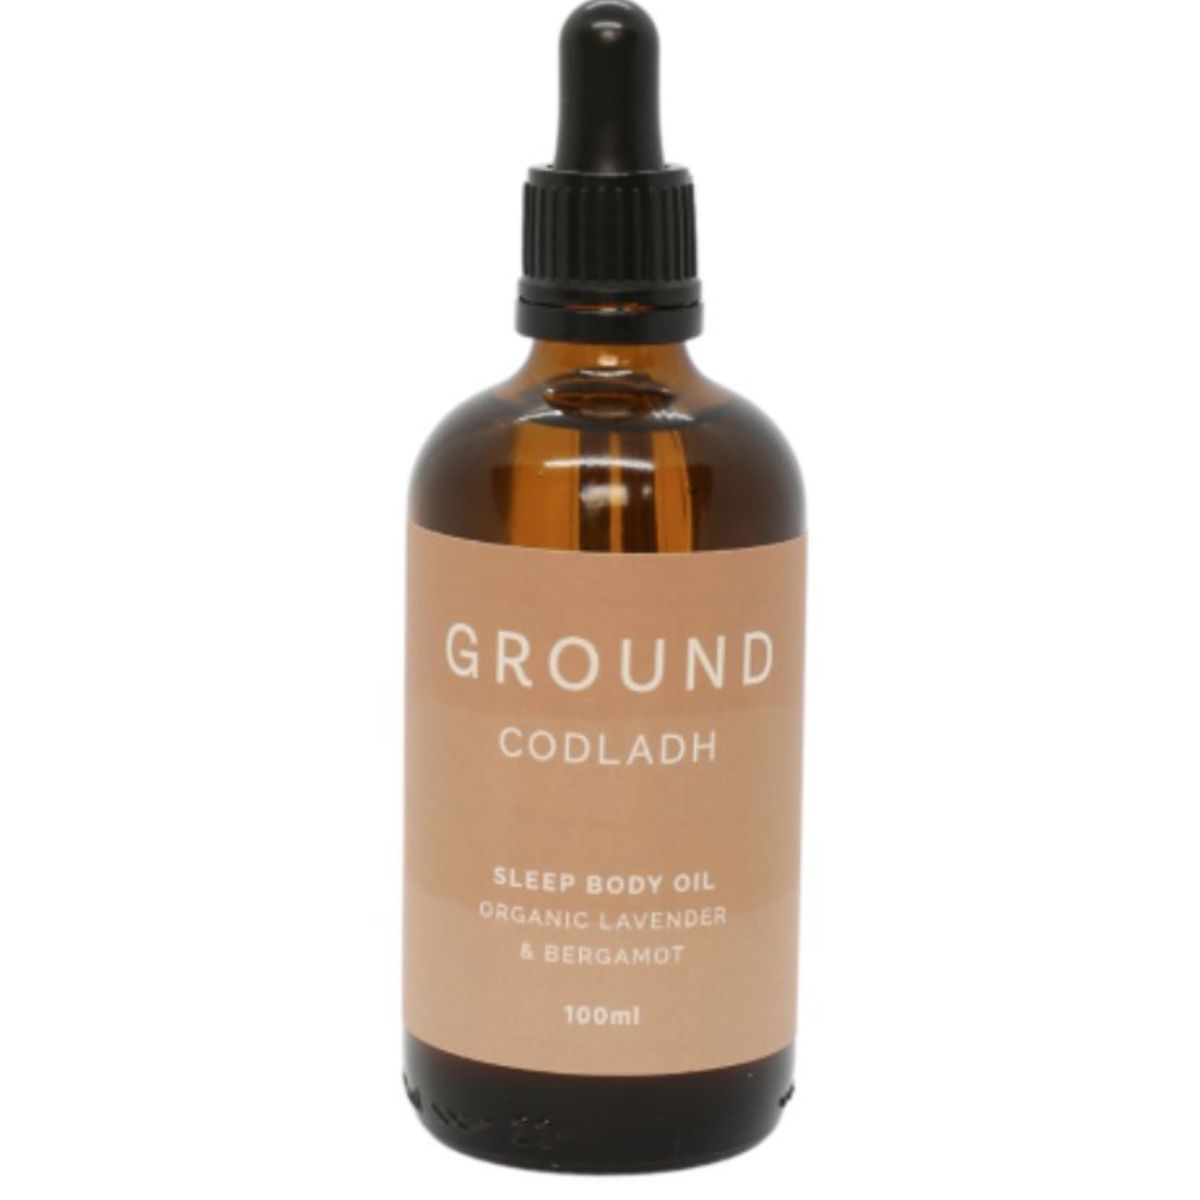 GROUND CODLADH Sleep Body Oil